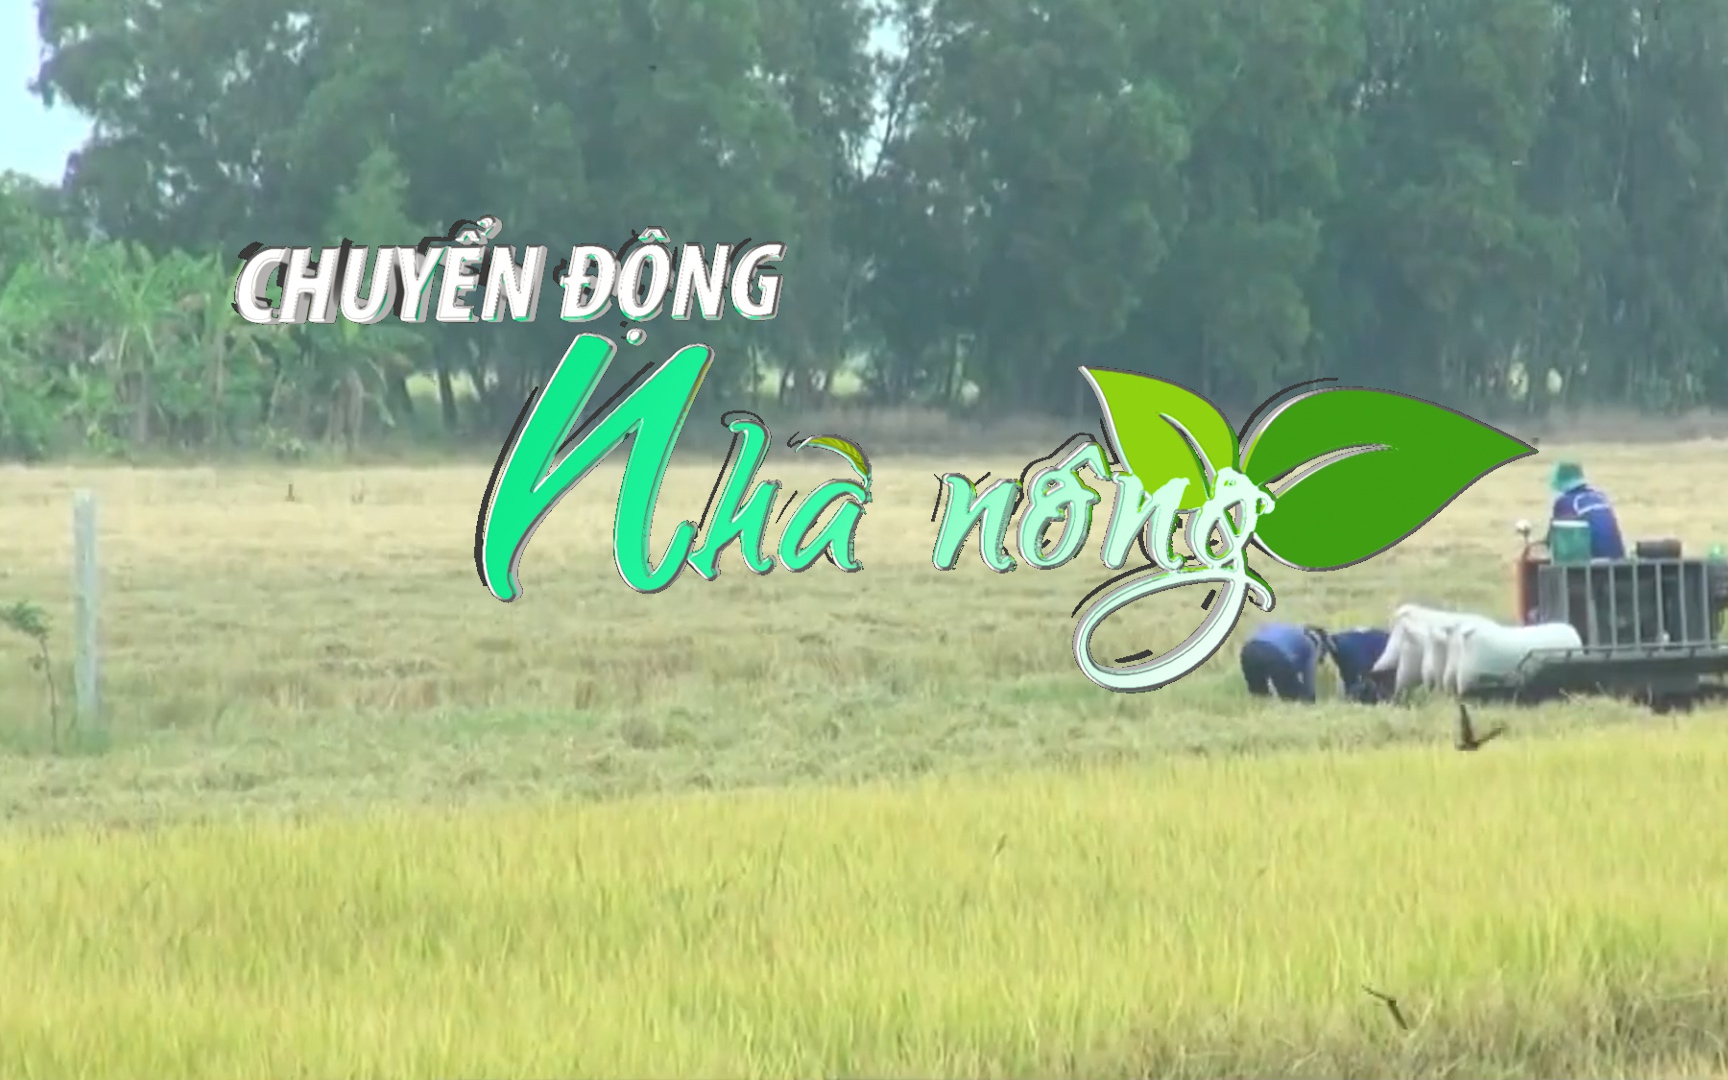 Chuyển động Nhà nông 11/11: 75.000 nông dân Kiên Giang được hưởng lợi từ dự án TRVC